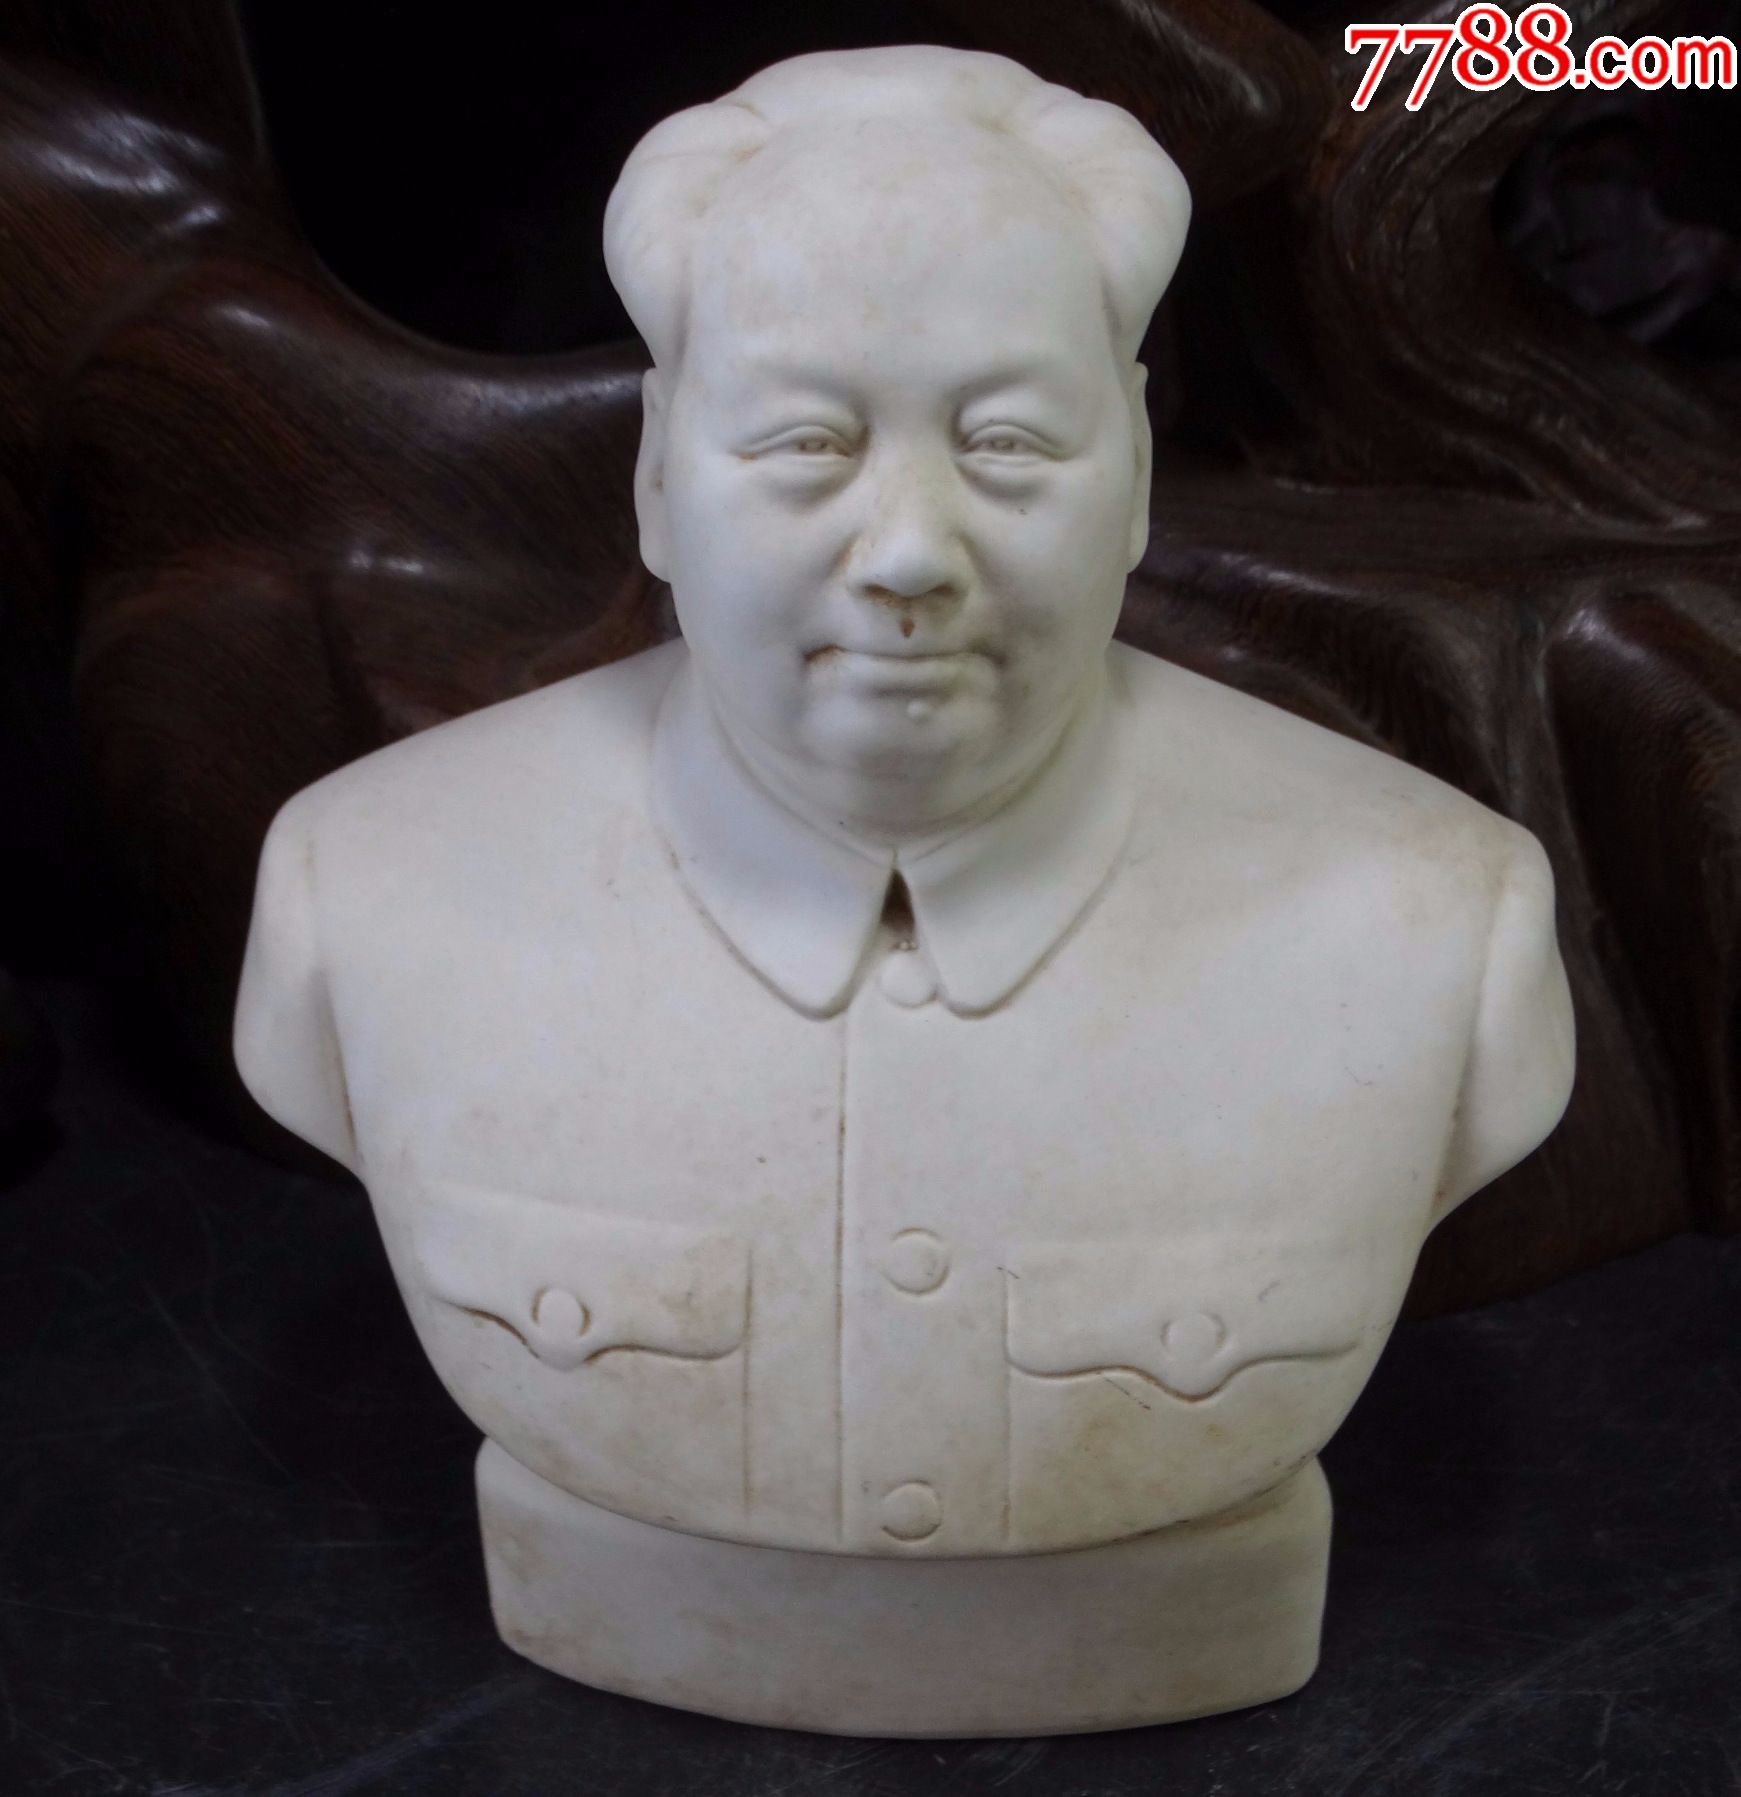 毛主席人像摆件纯铜供奉沙发坐像铜像纯铜工艺品毛泽东塑像大型_虎窝淘